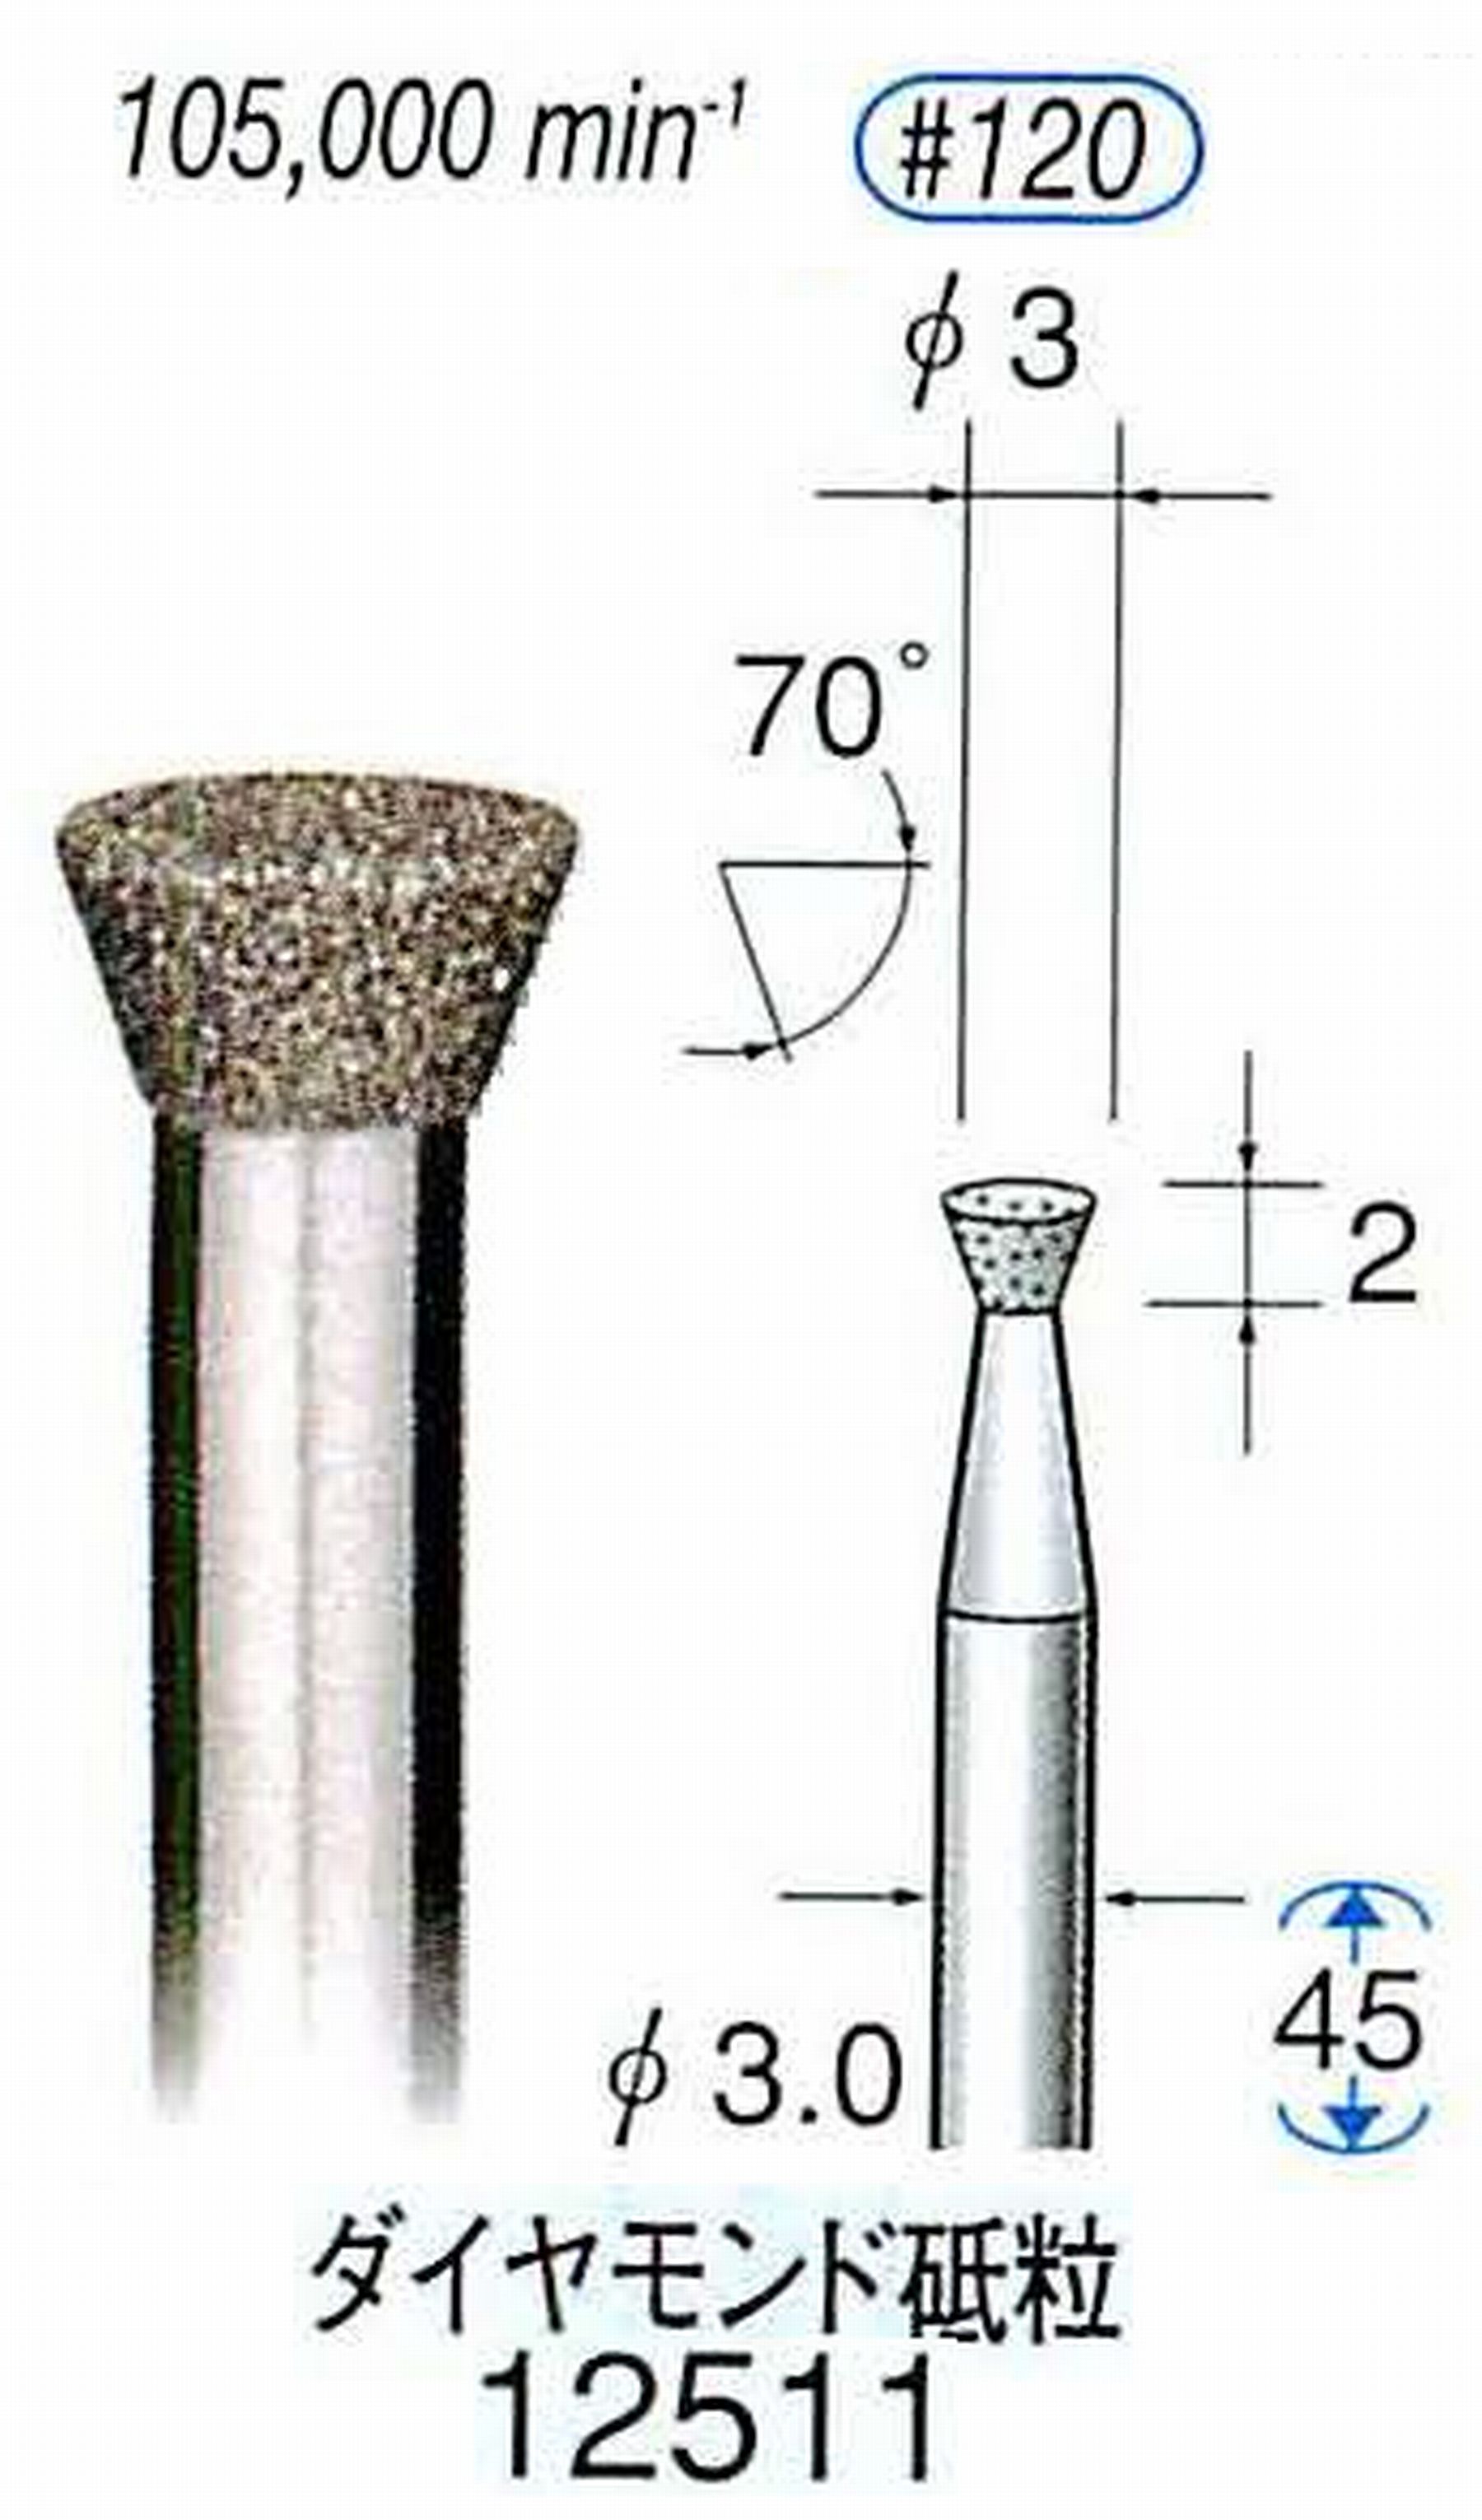 ナカニシ/NAKANISHI 電着ダイヤモンド ダイヤモンド砥粒 軸径(シャンク)φ3.0mm 12511